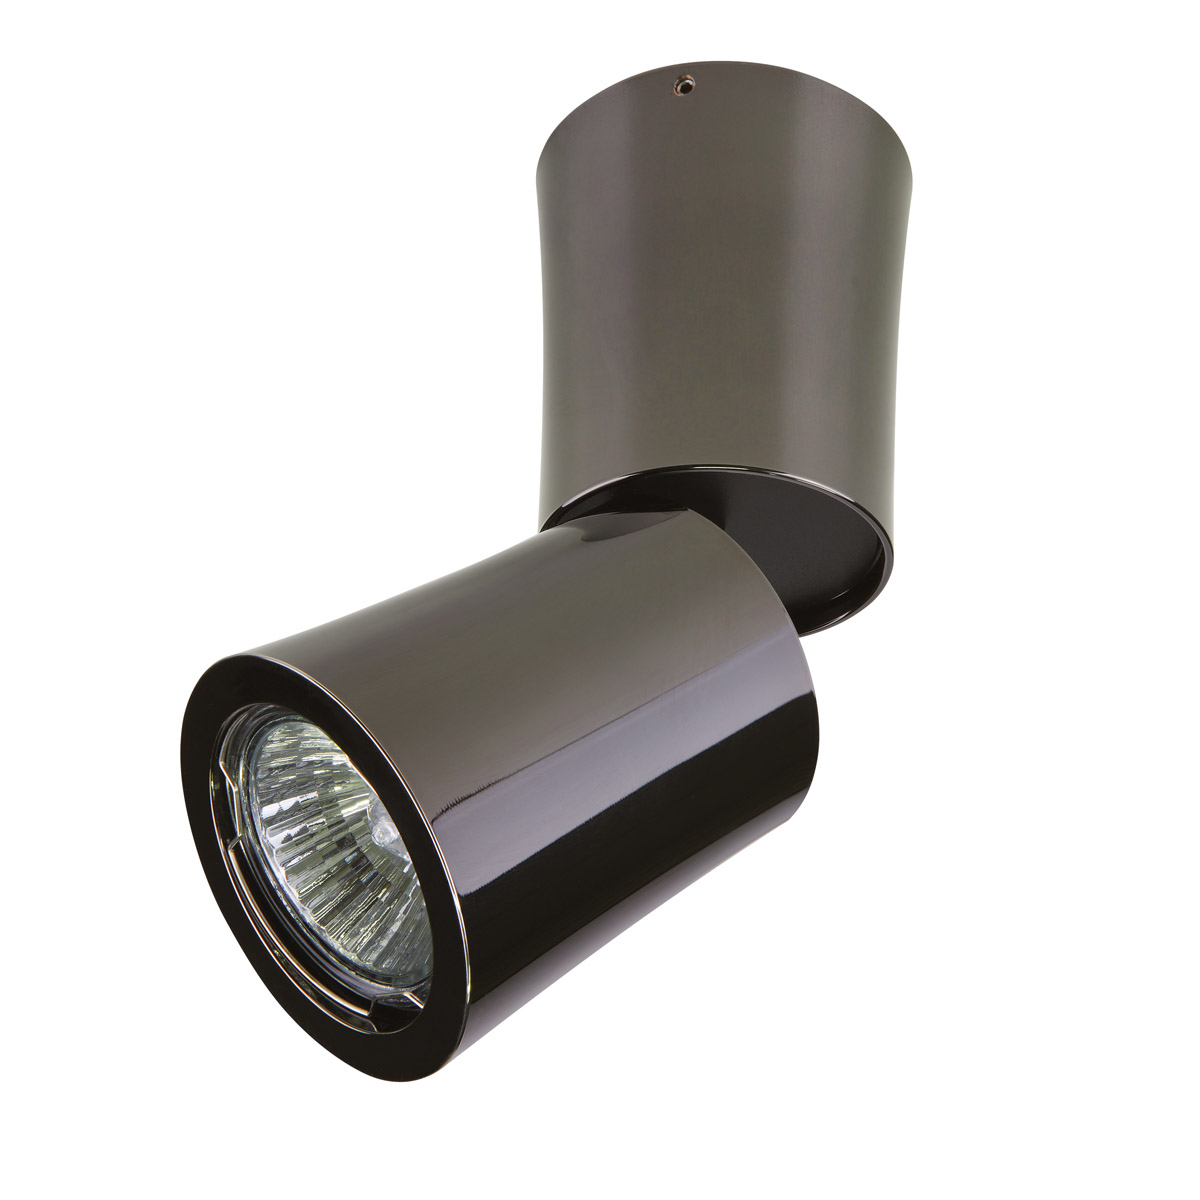 Светильник точечный накладной декоративный под заменяемые ГЛН или LED лампы Lightstar 214458 Rotonda